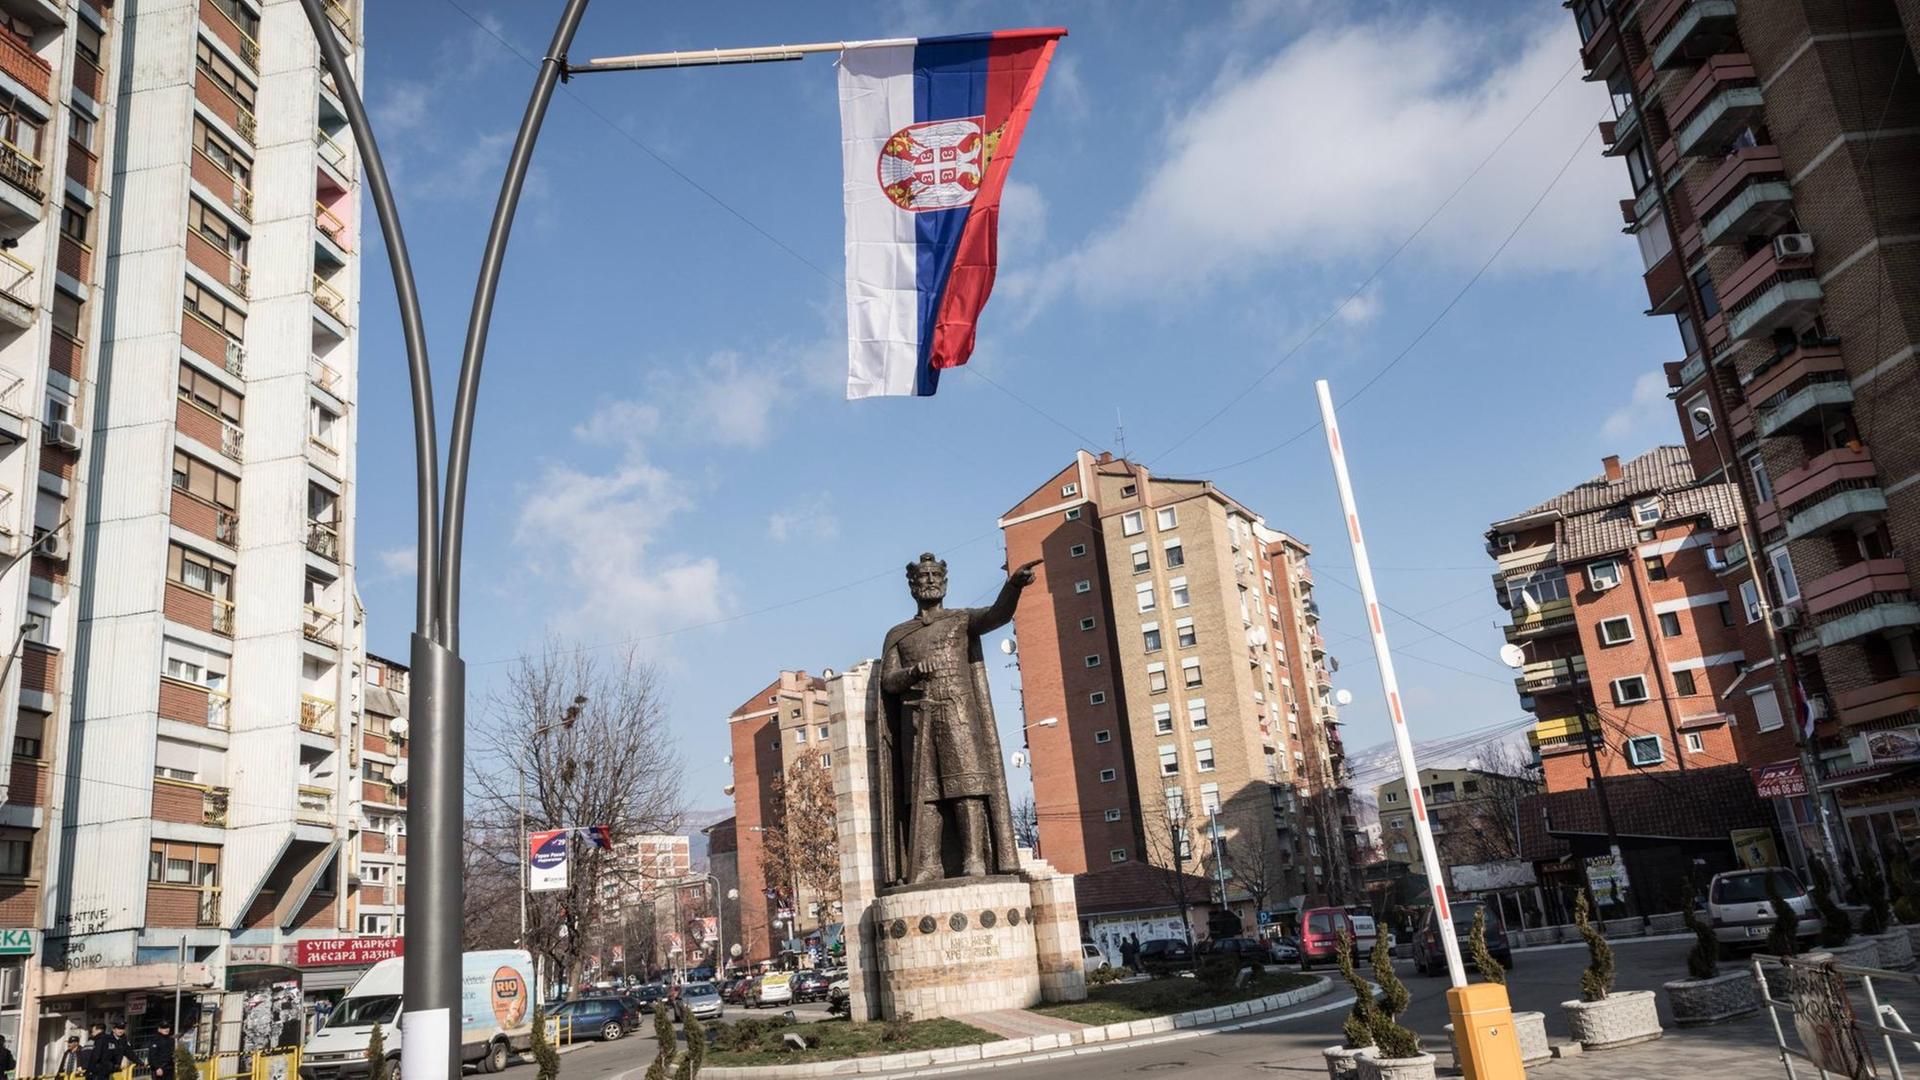 Straßenszene aus der Stadt Mitrovica im Kosovo: An einer Straßenlaterne hängt eine serbische Flagge.